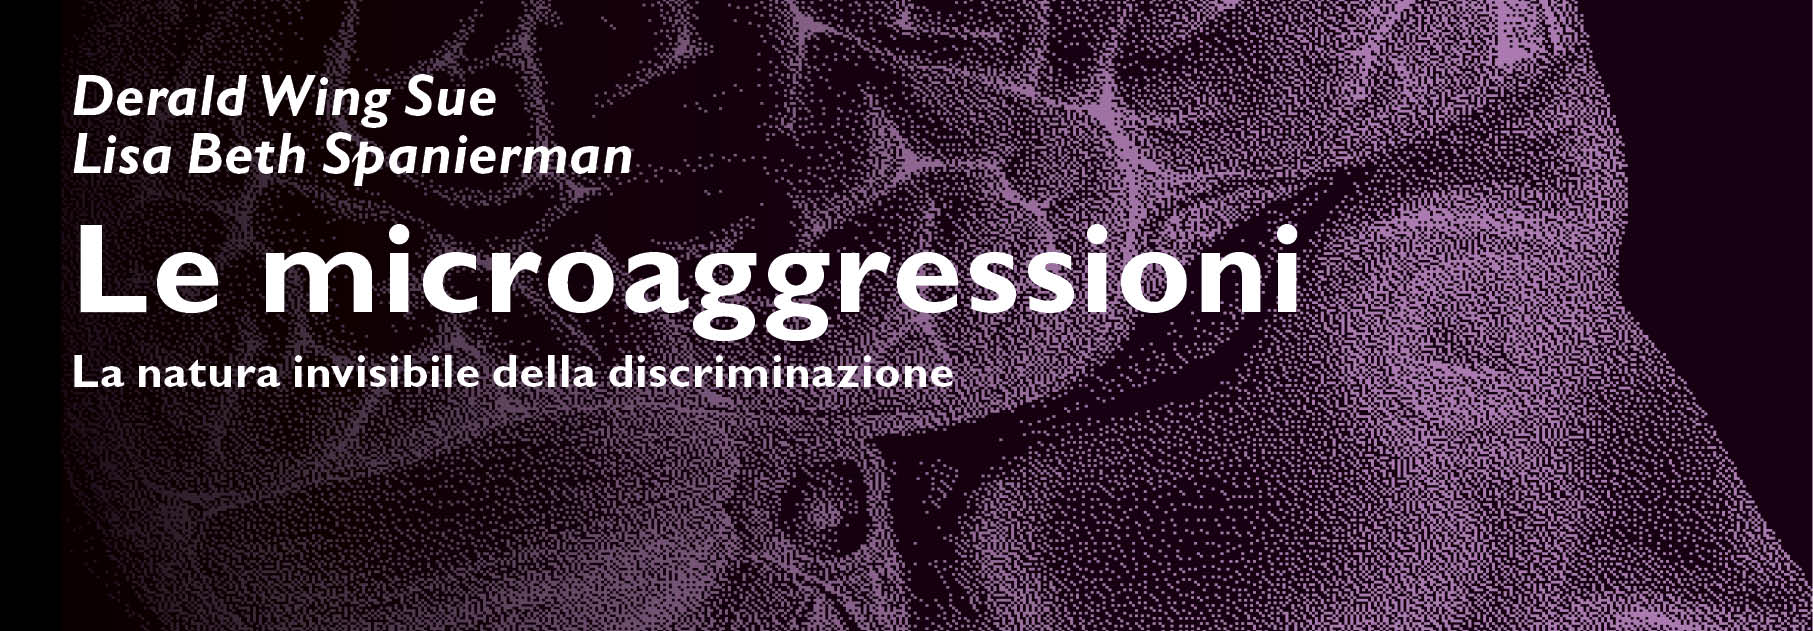 Le microaggressioni